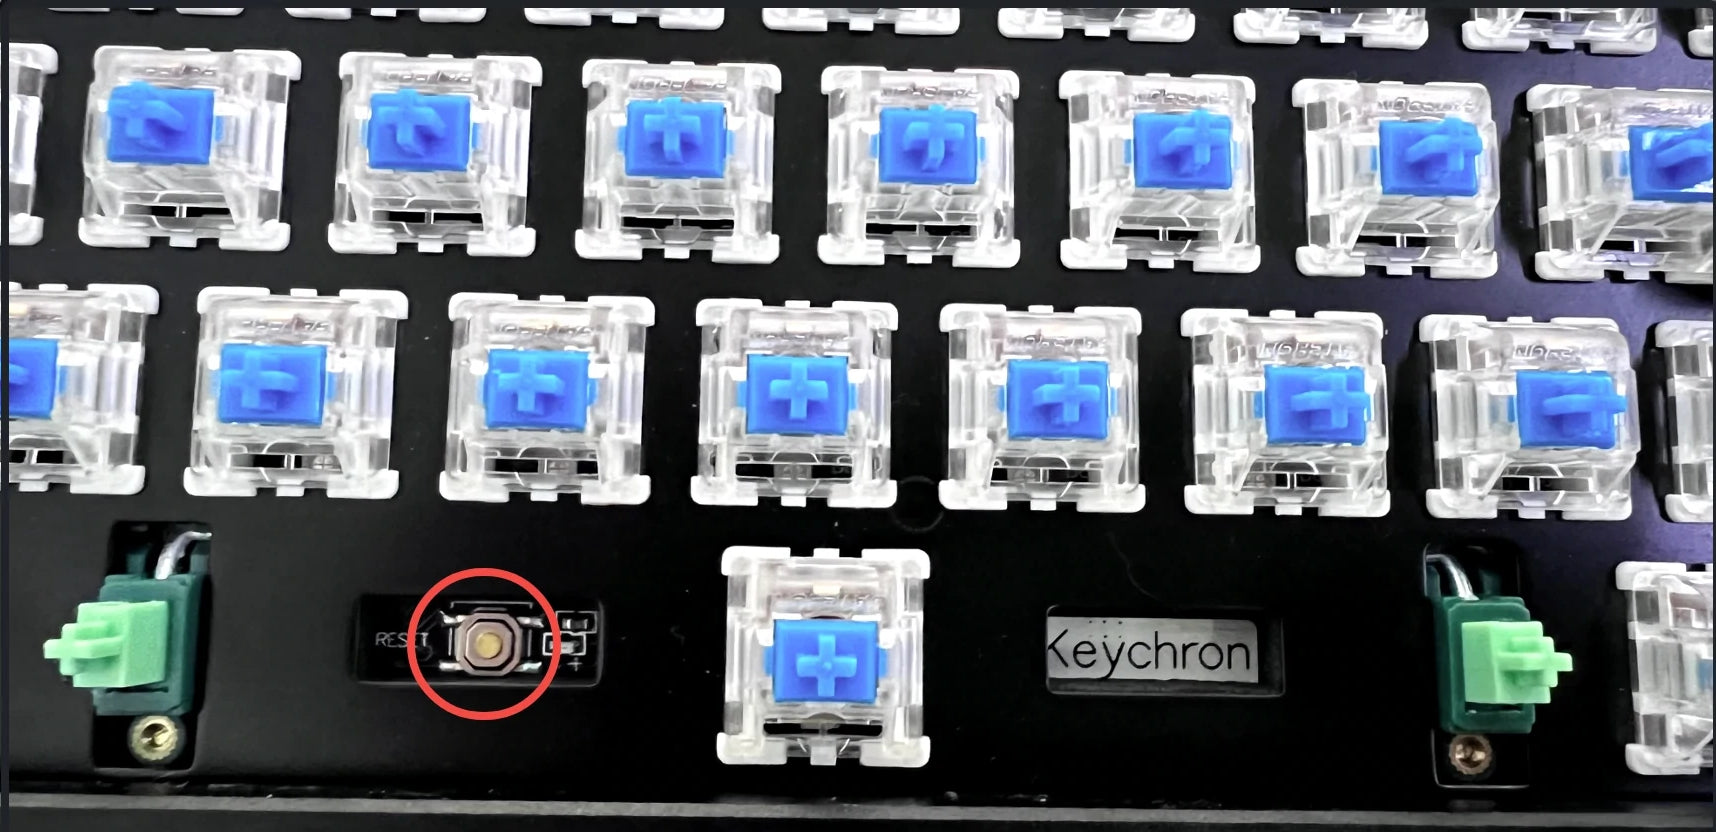 Keychron Q1 Max keyboard